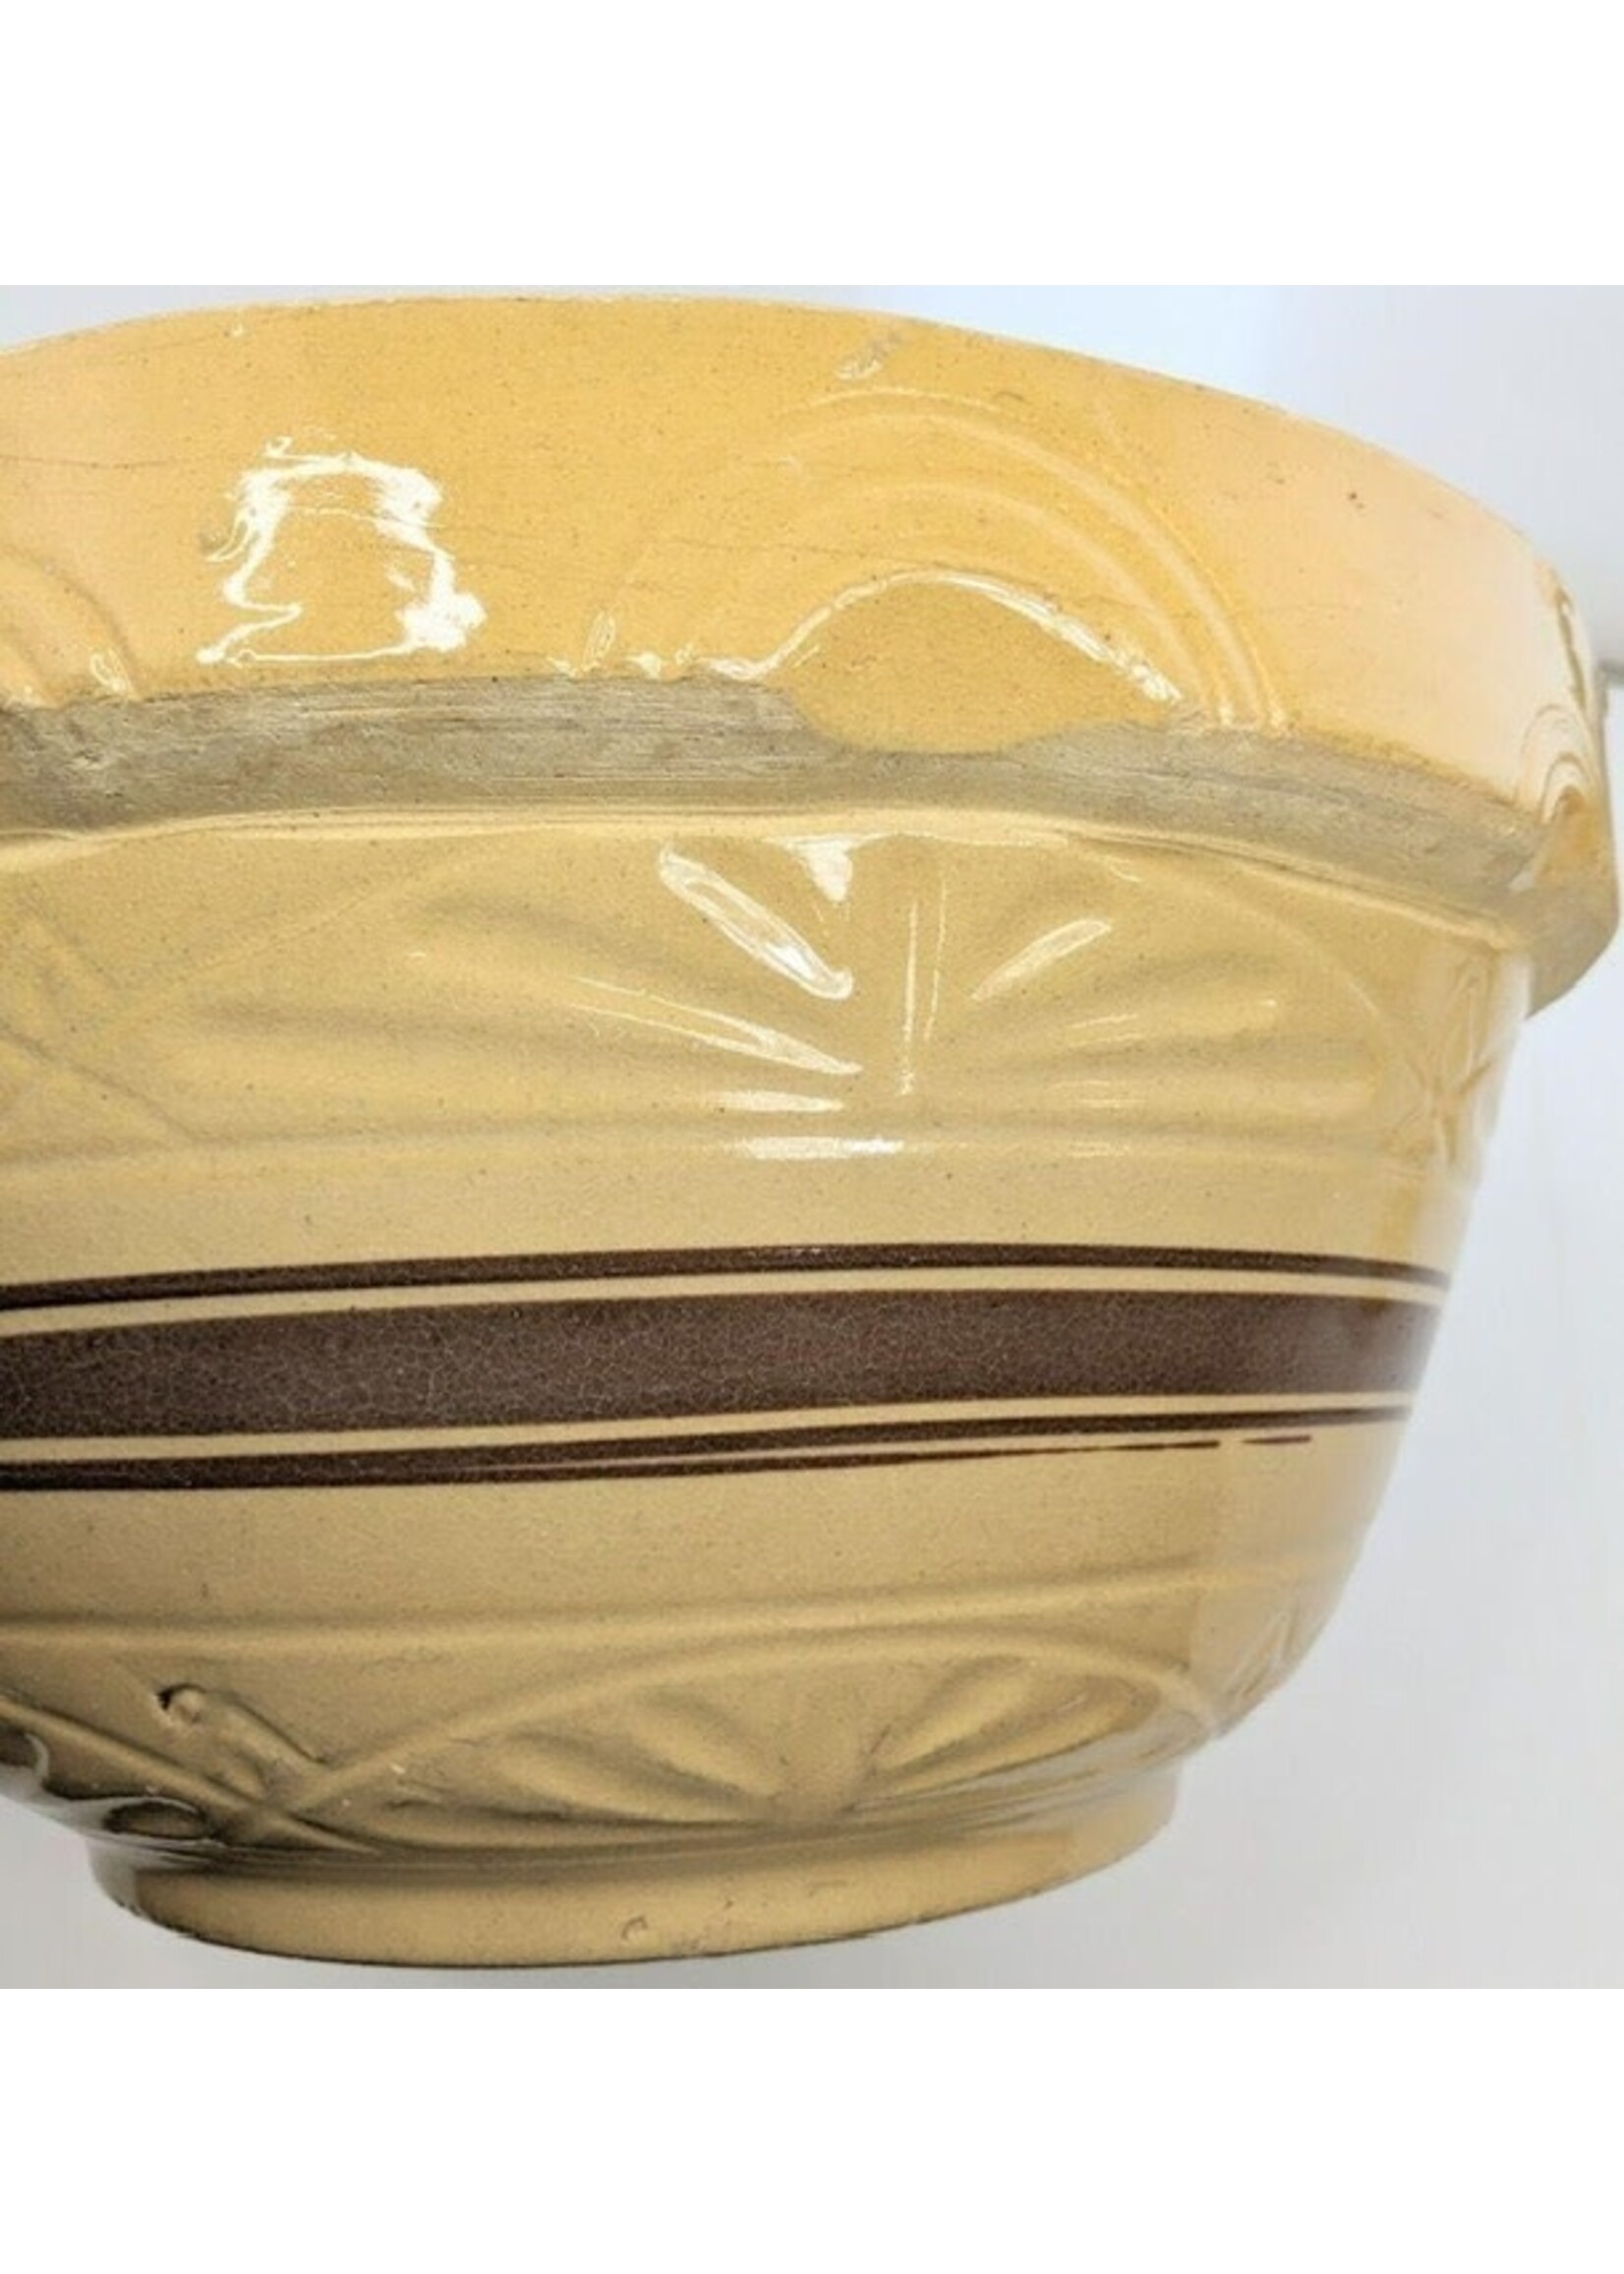 Antique Roseville Pottery Huge Batter Mixing Bowl